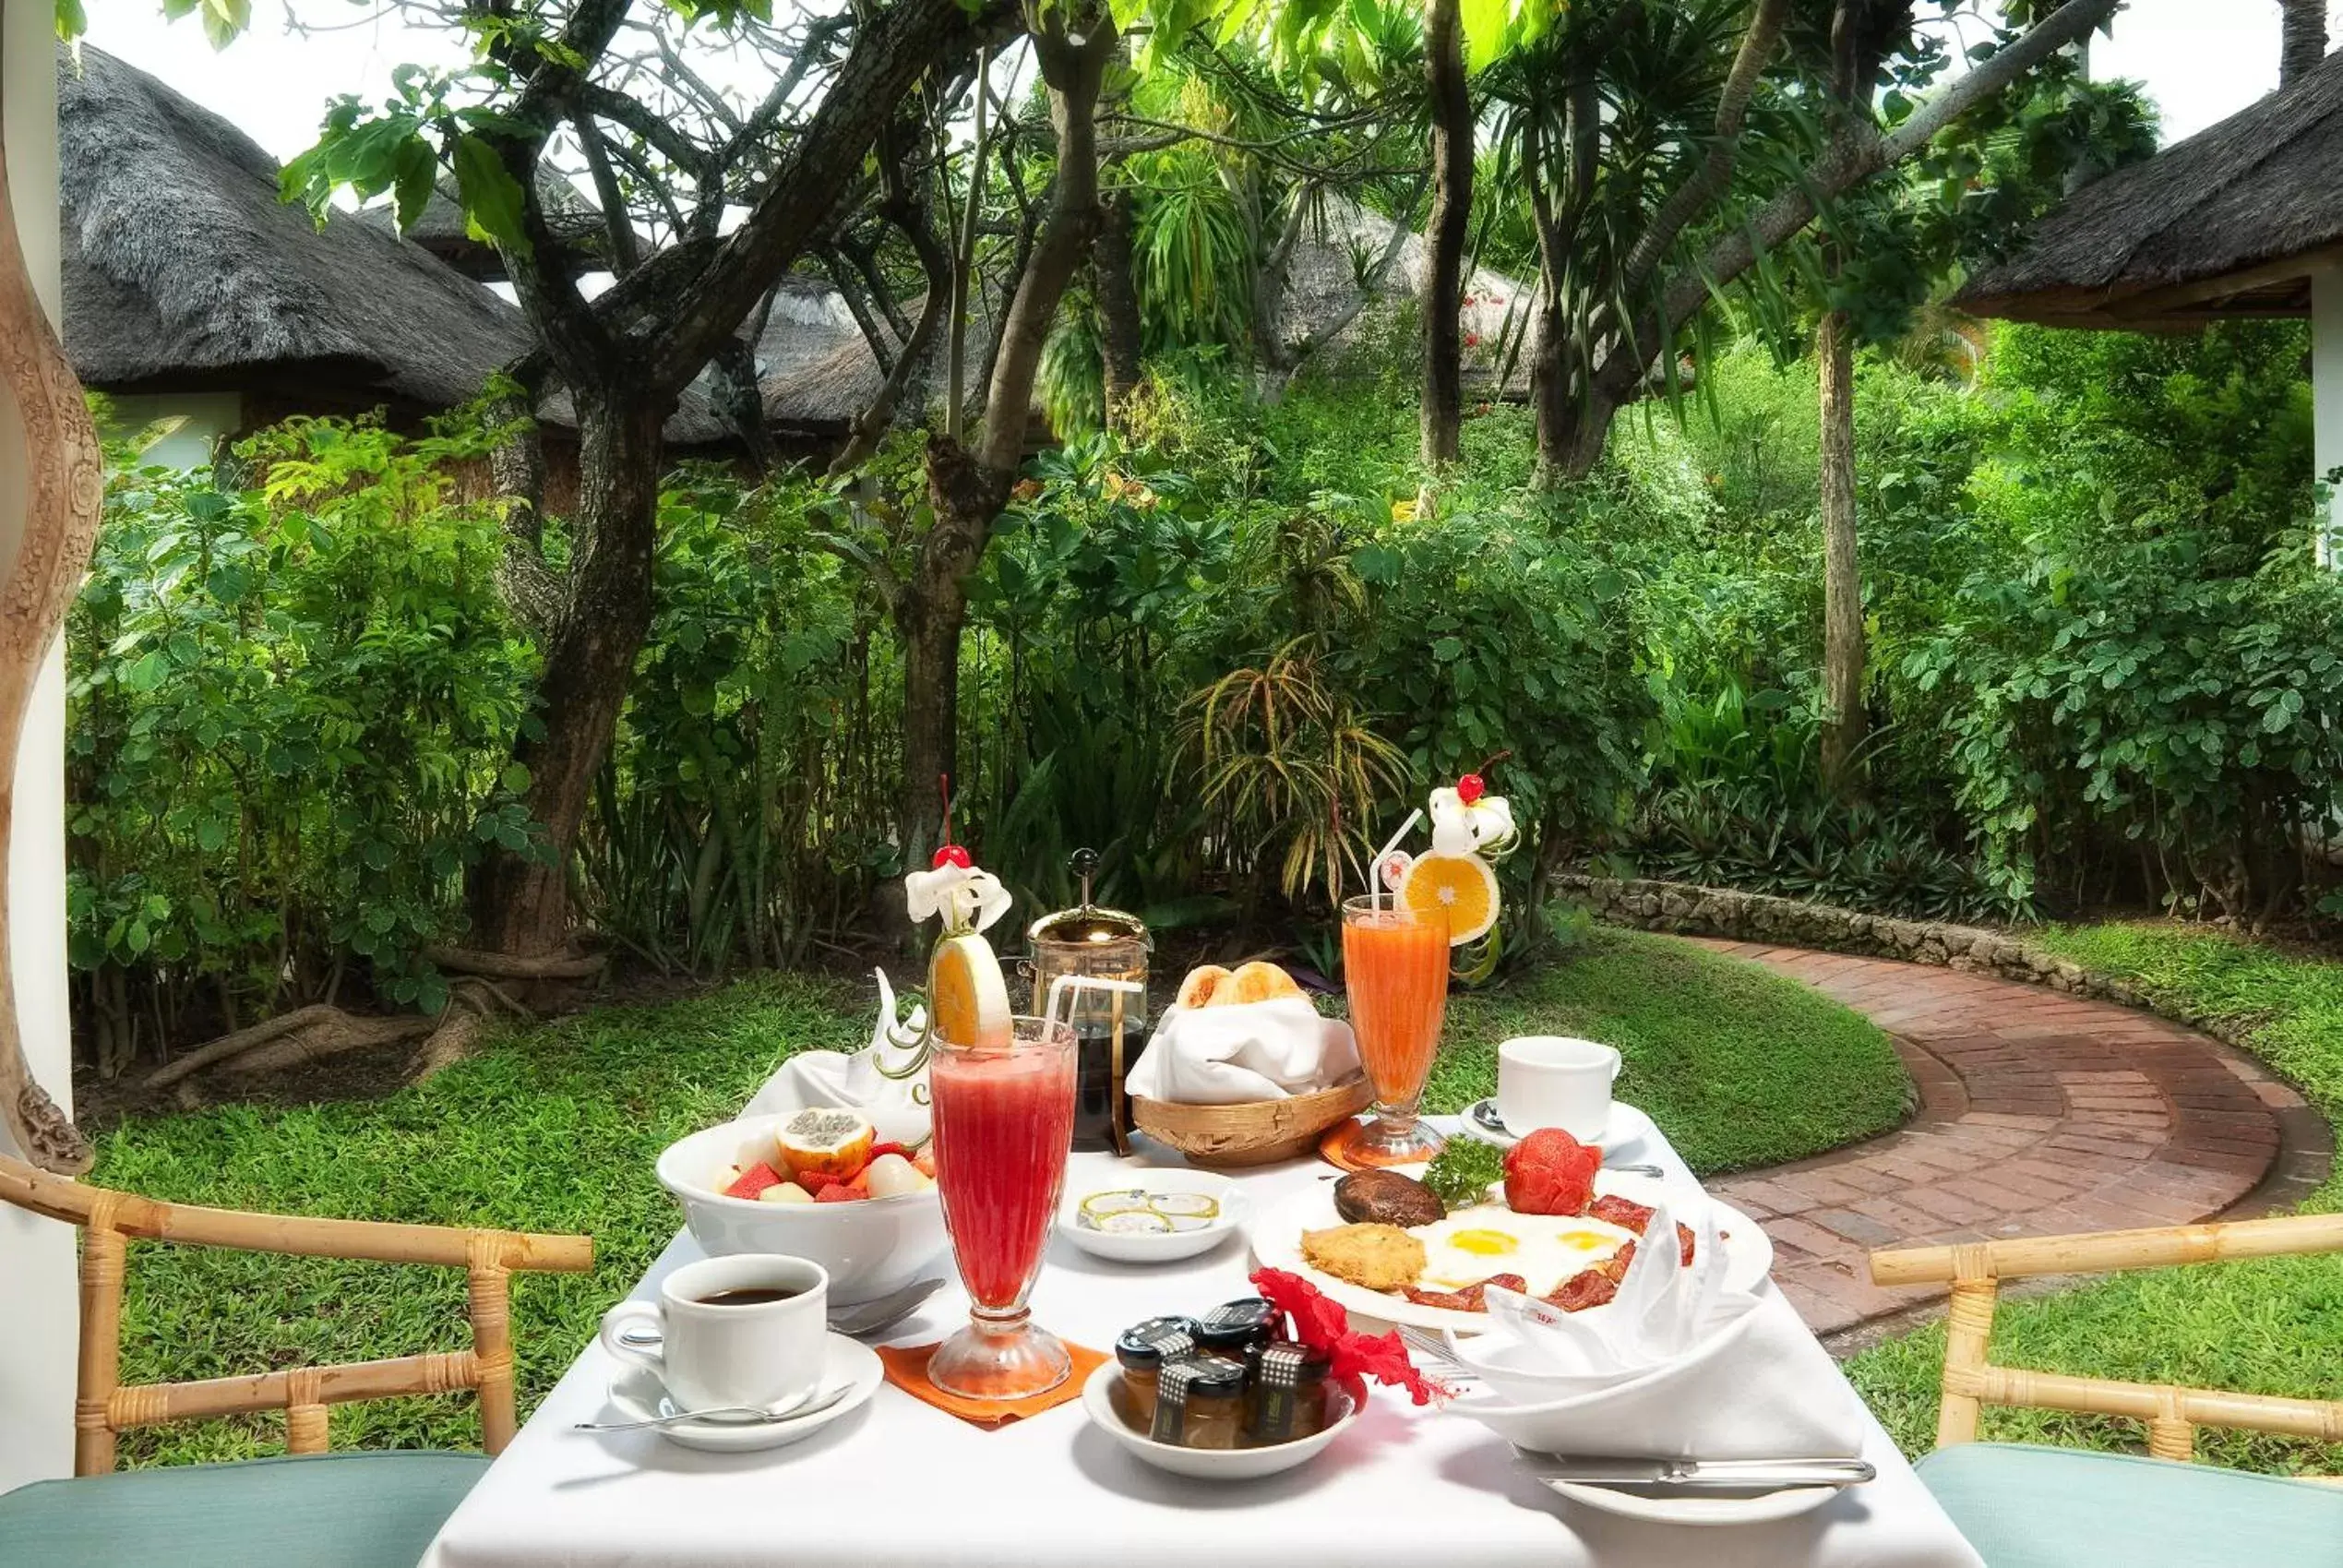 Breakfast in Poppies Bali